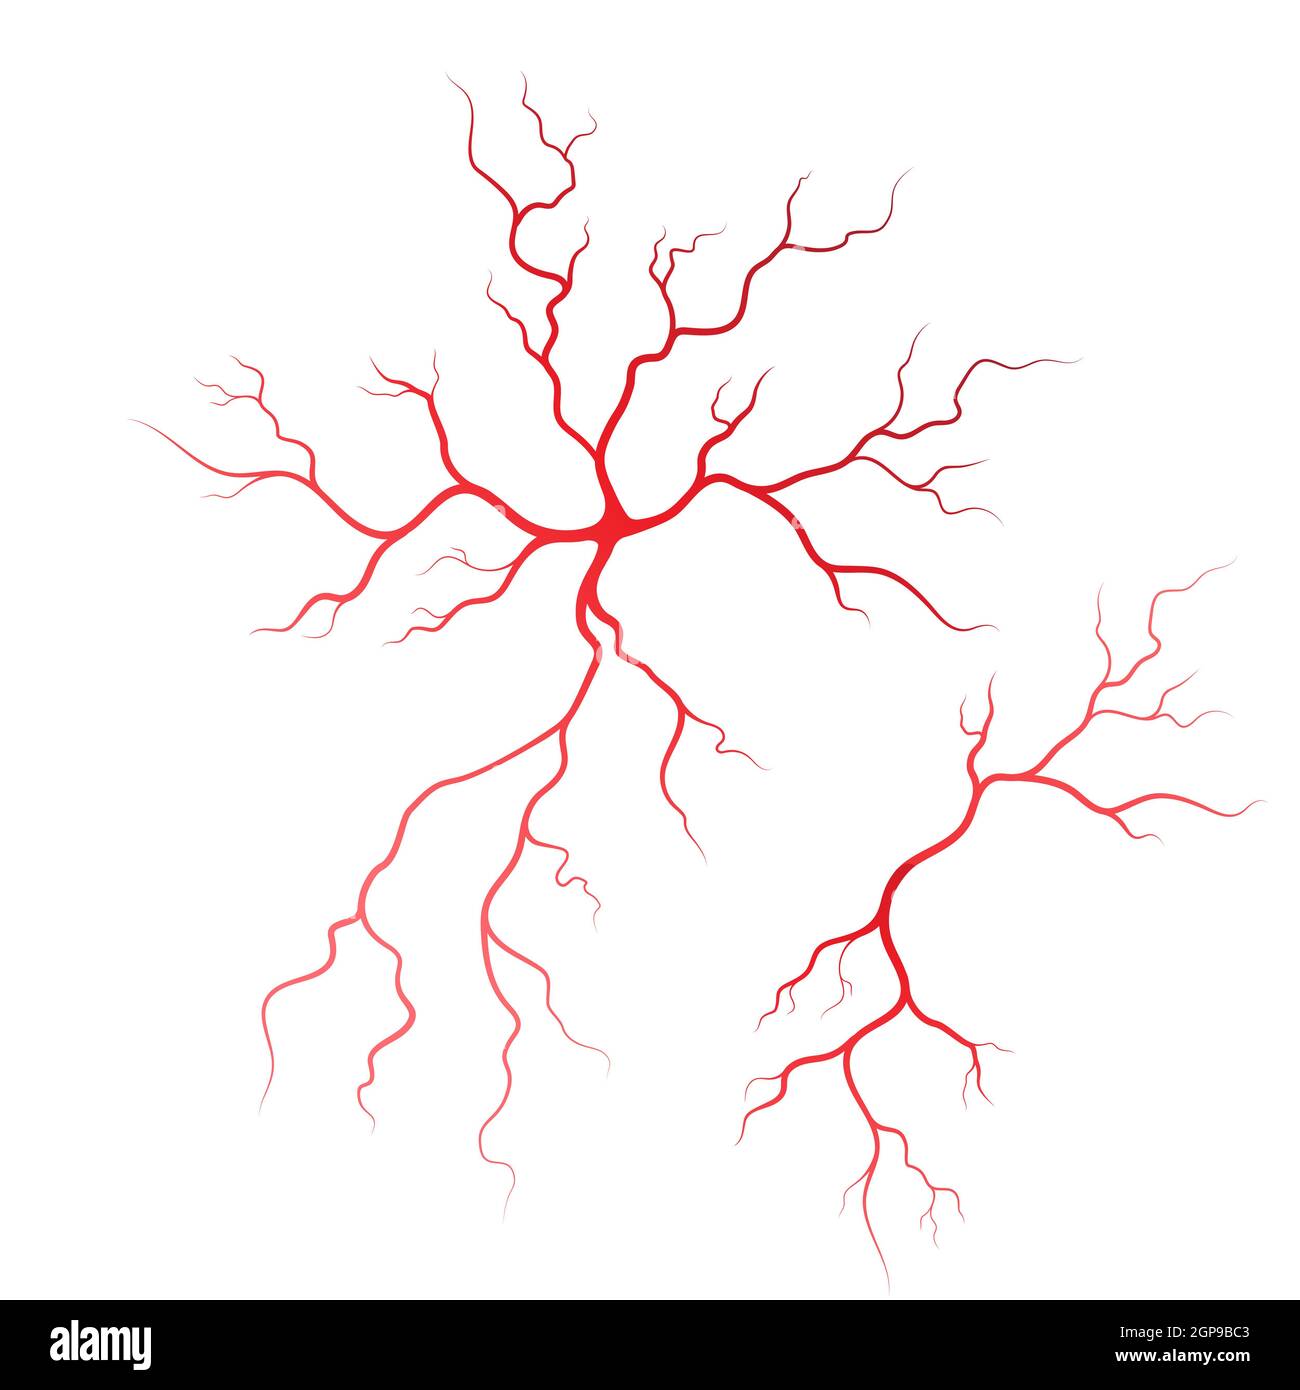 Les veines et les artères illustration design template Banque D'Images